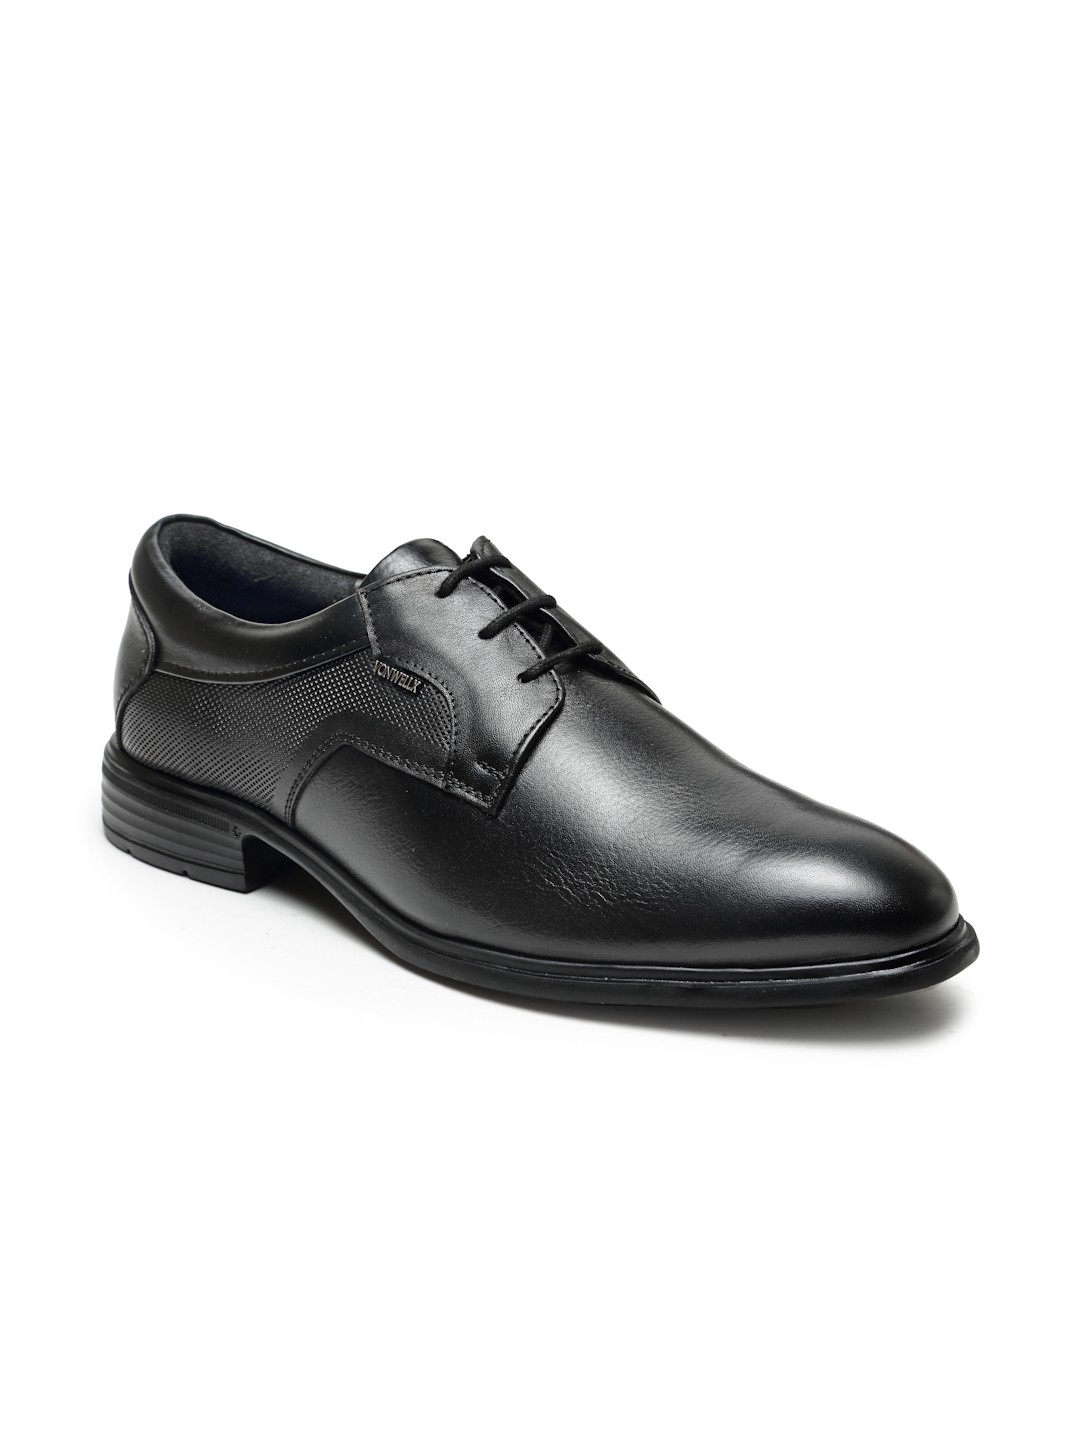 Buy Von Wellx Germany Comfort Men's Black Formal Shoes Adler Online in Jeddah